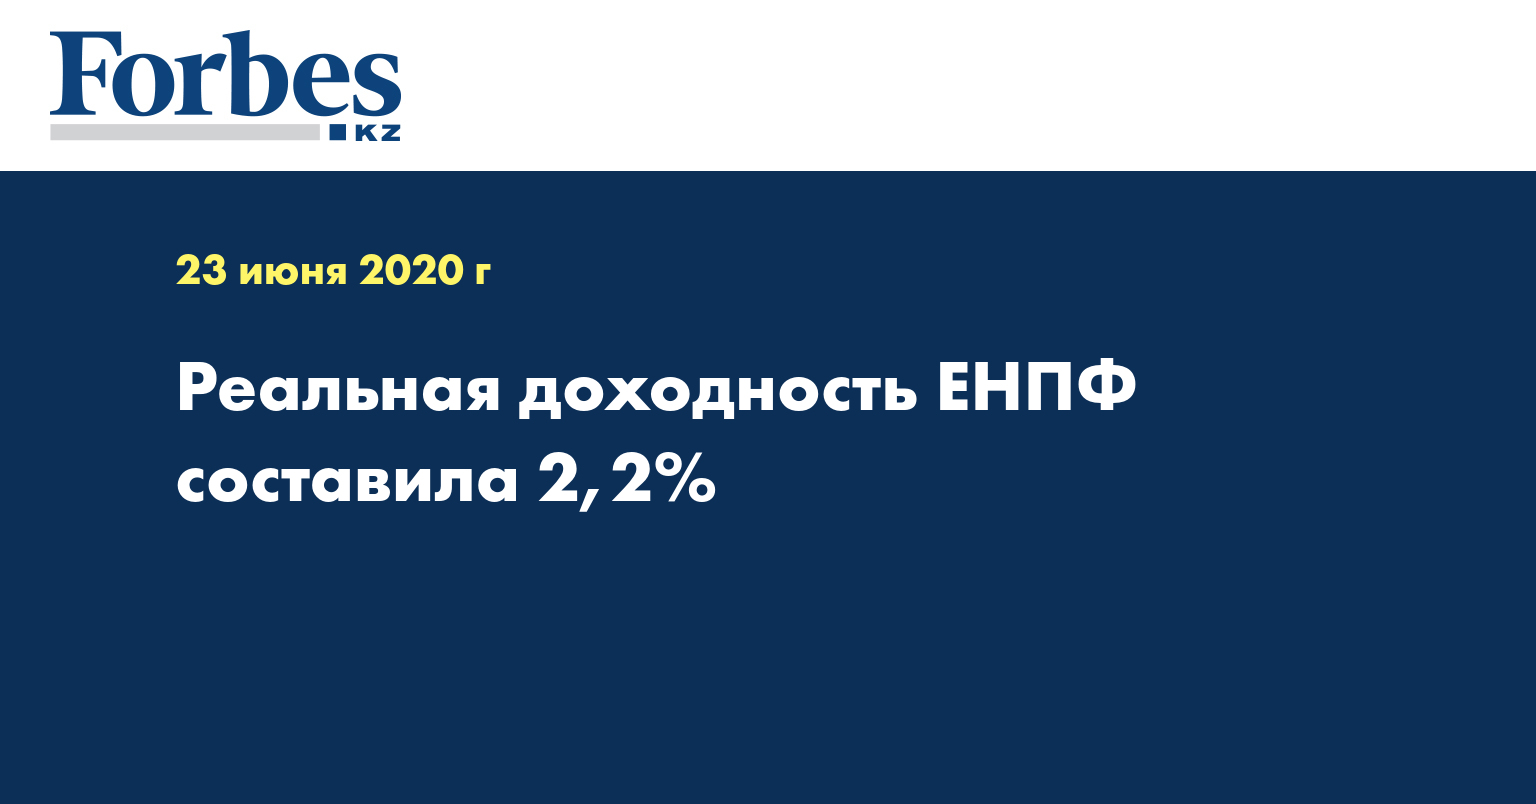  Реальная доходность ЕНПФ составила 2,2%